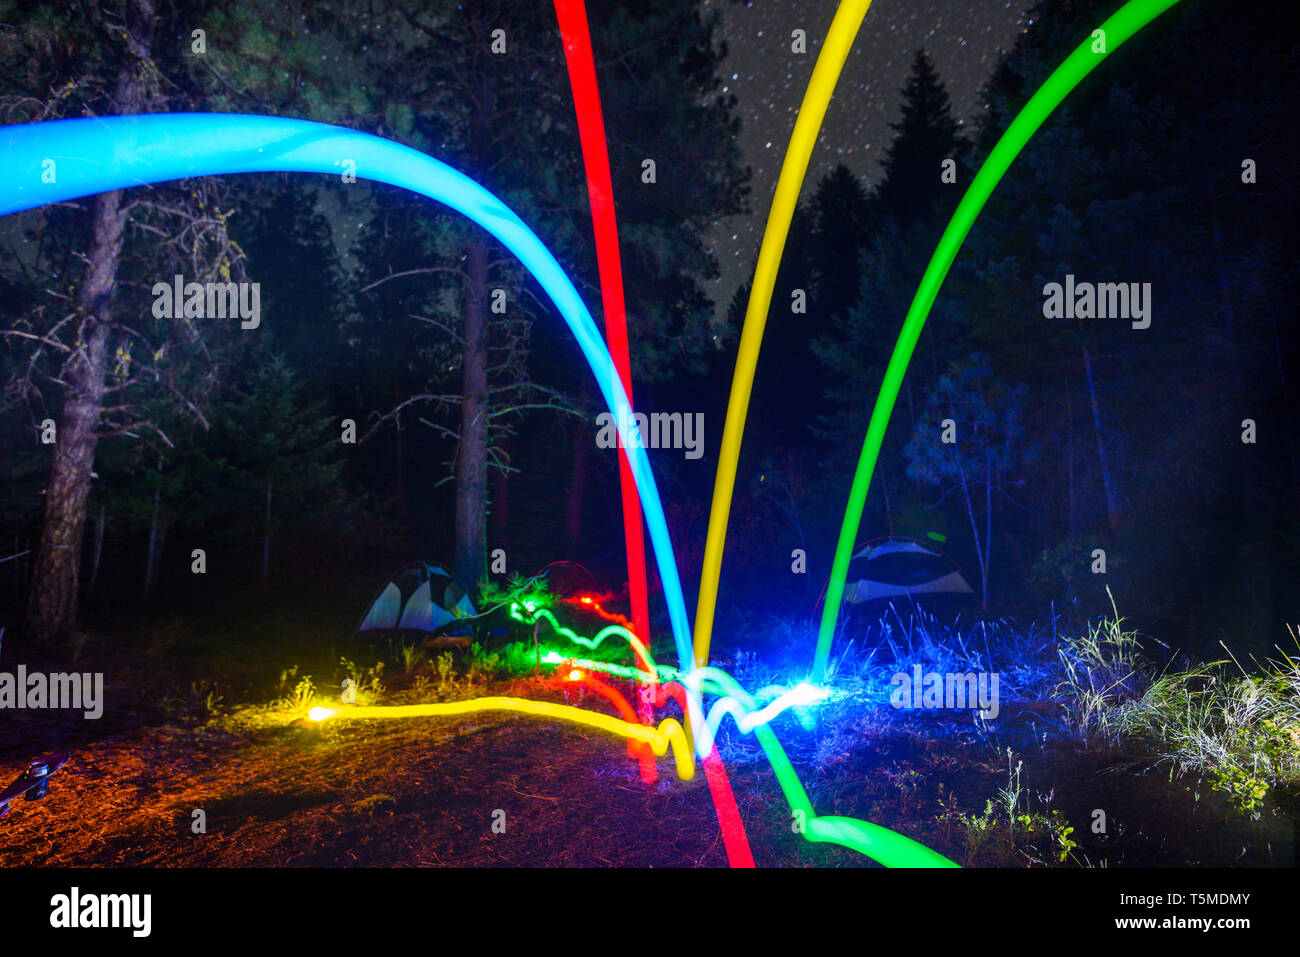 Des sentiers de lumière colorée de boules lyonnaises de nuit Banque D'Images